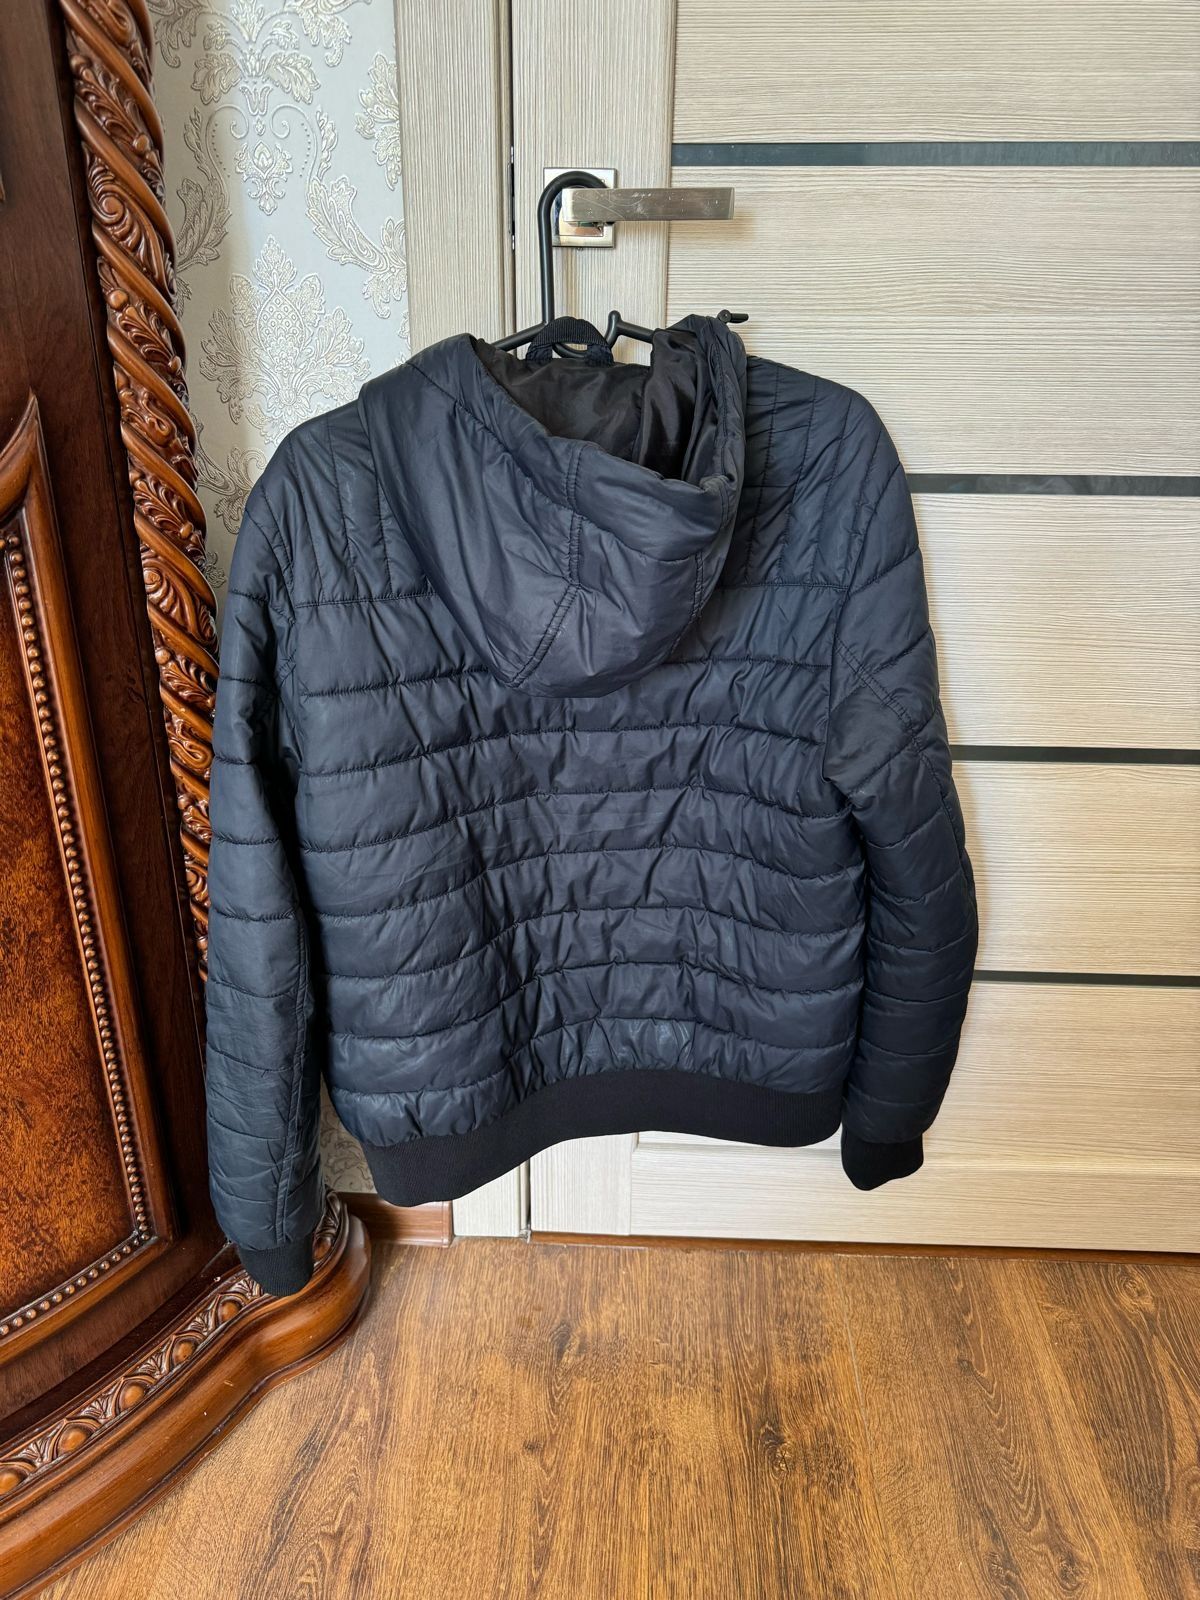 Куртка мужская, размер S (44-46)